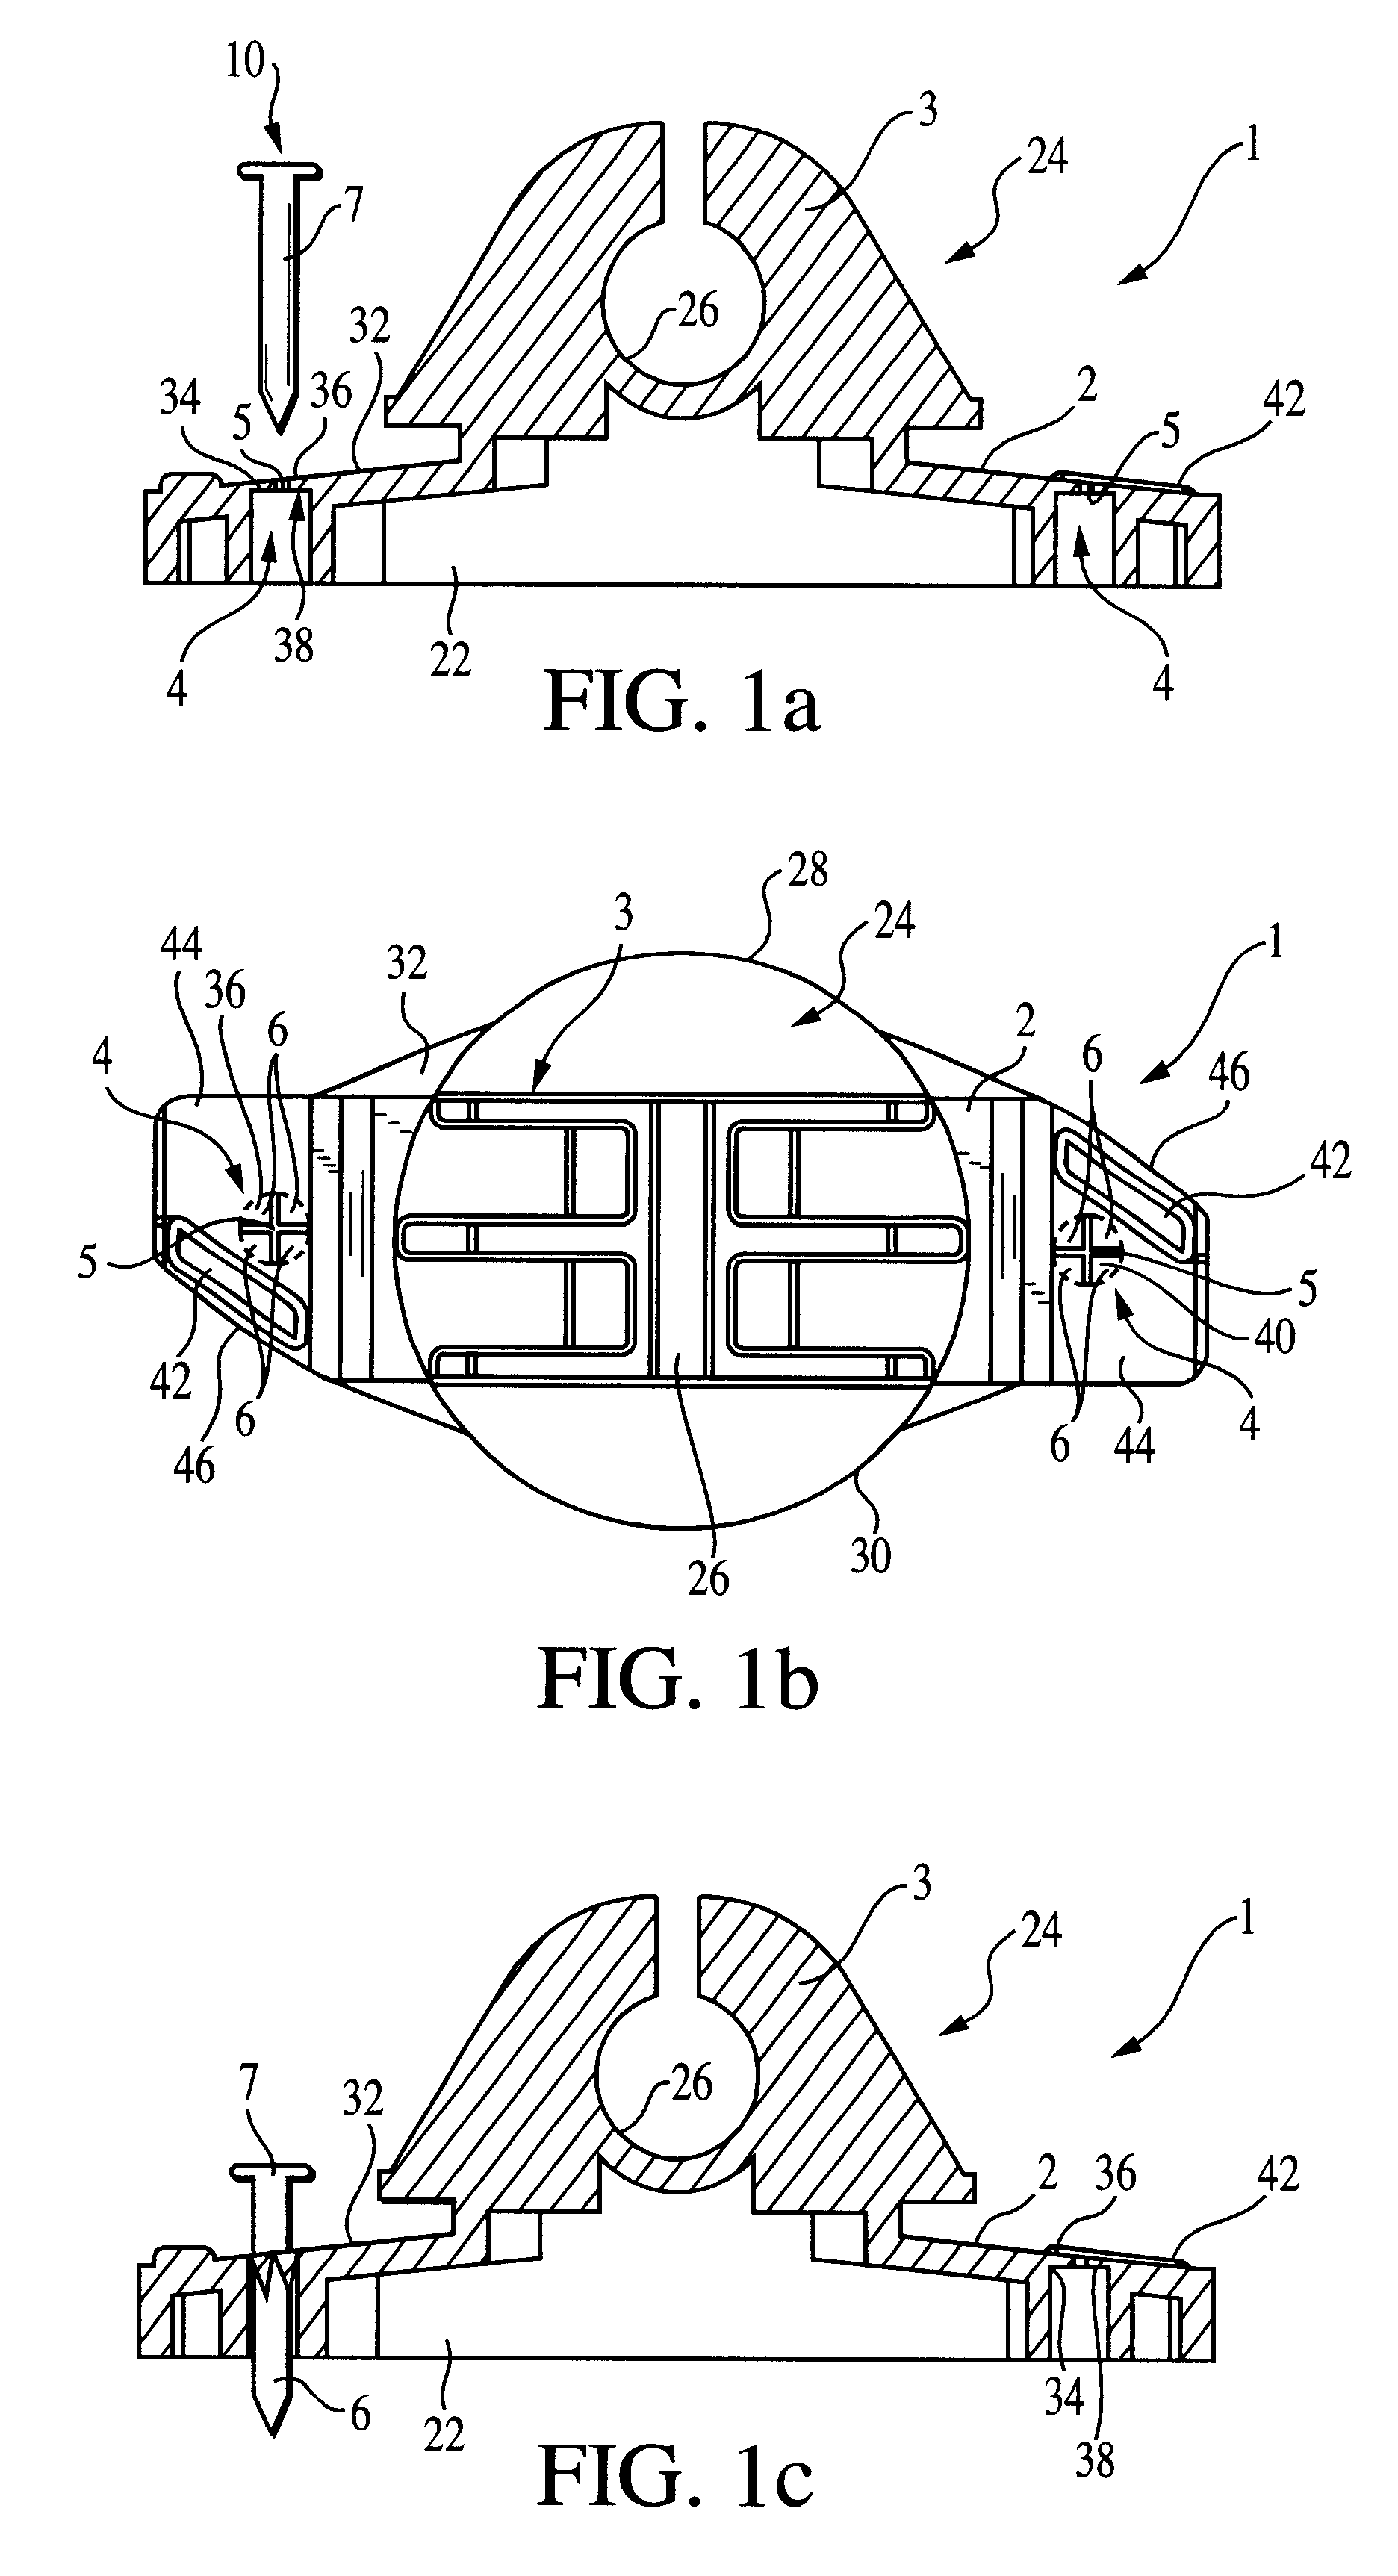 Insulator retainer